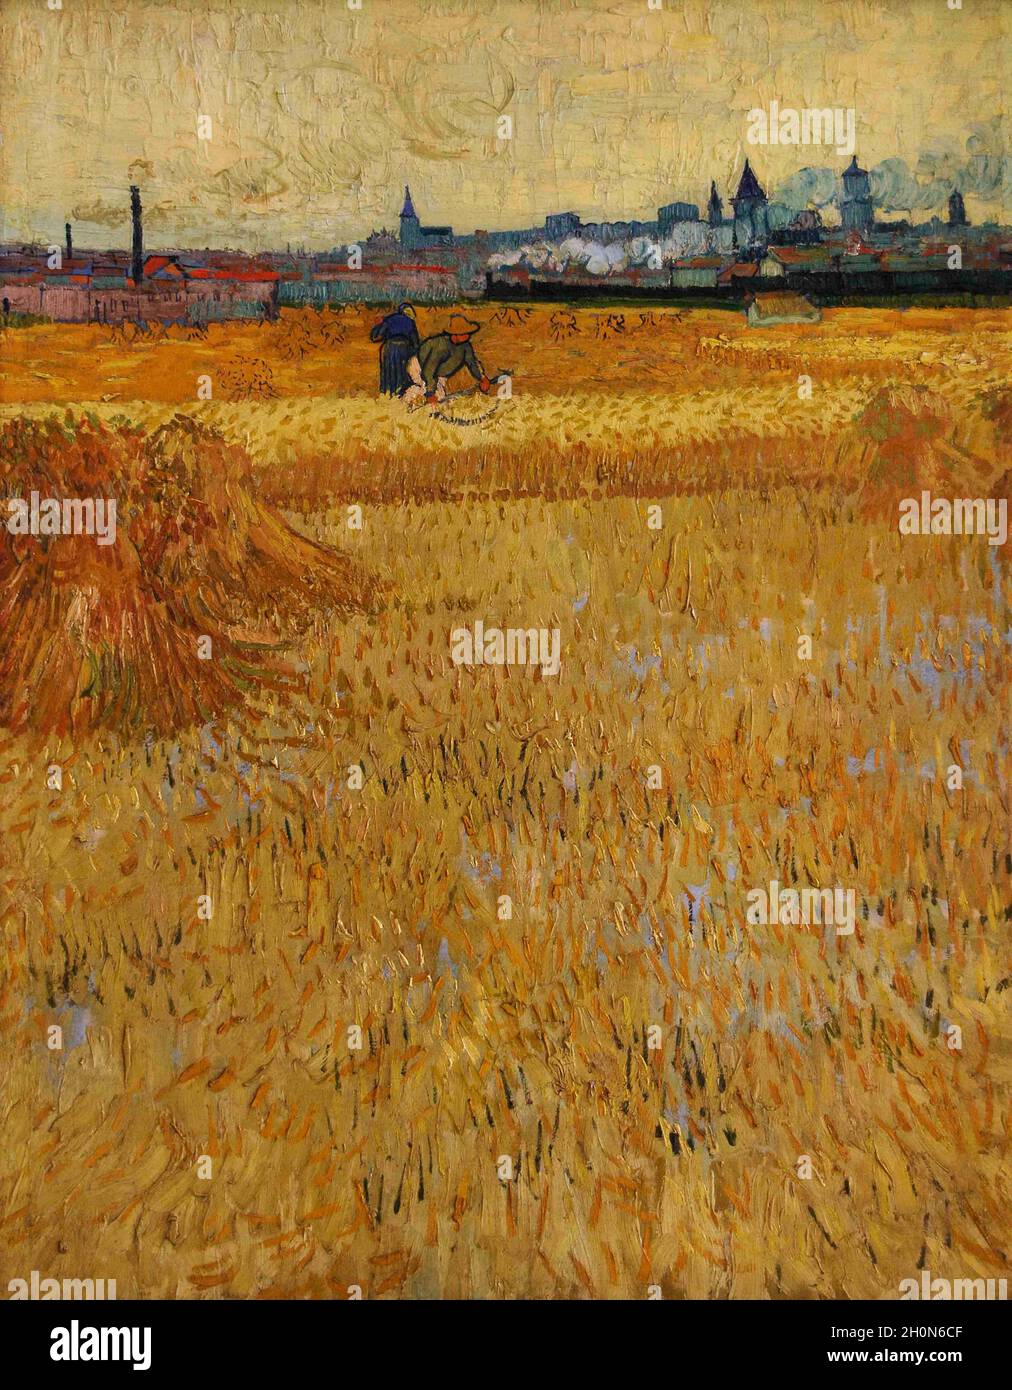 Vincent Van Gogh (1853-1890). Dutch post-impressionist painter. The Harvesters, 1888. Oil on canvas (73 x 54 cm). Rodin Museum. Paris. France. Stock Photo